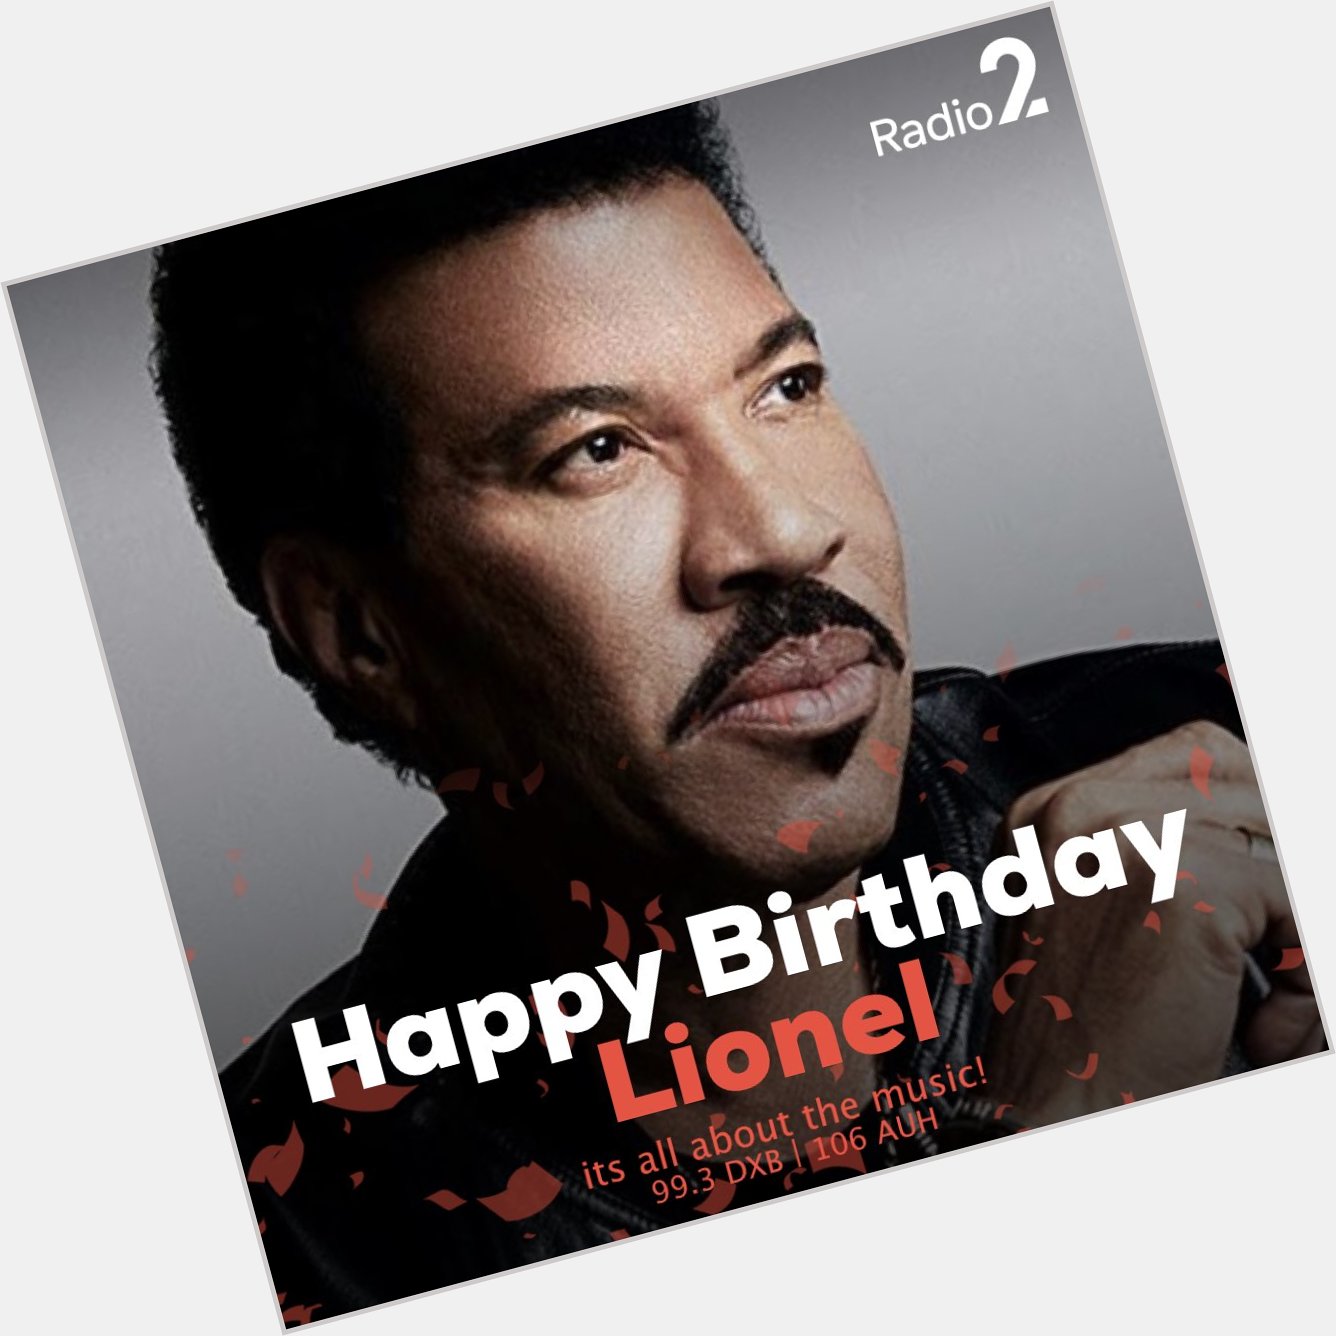 Happy birthday to singer- songwriter Lionel Richie 